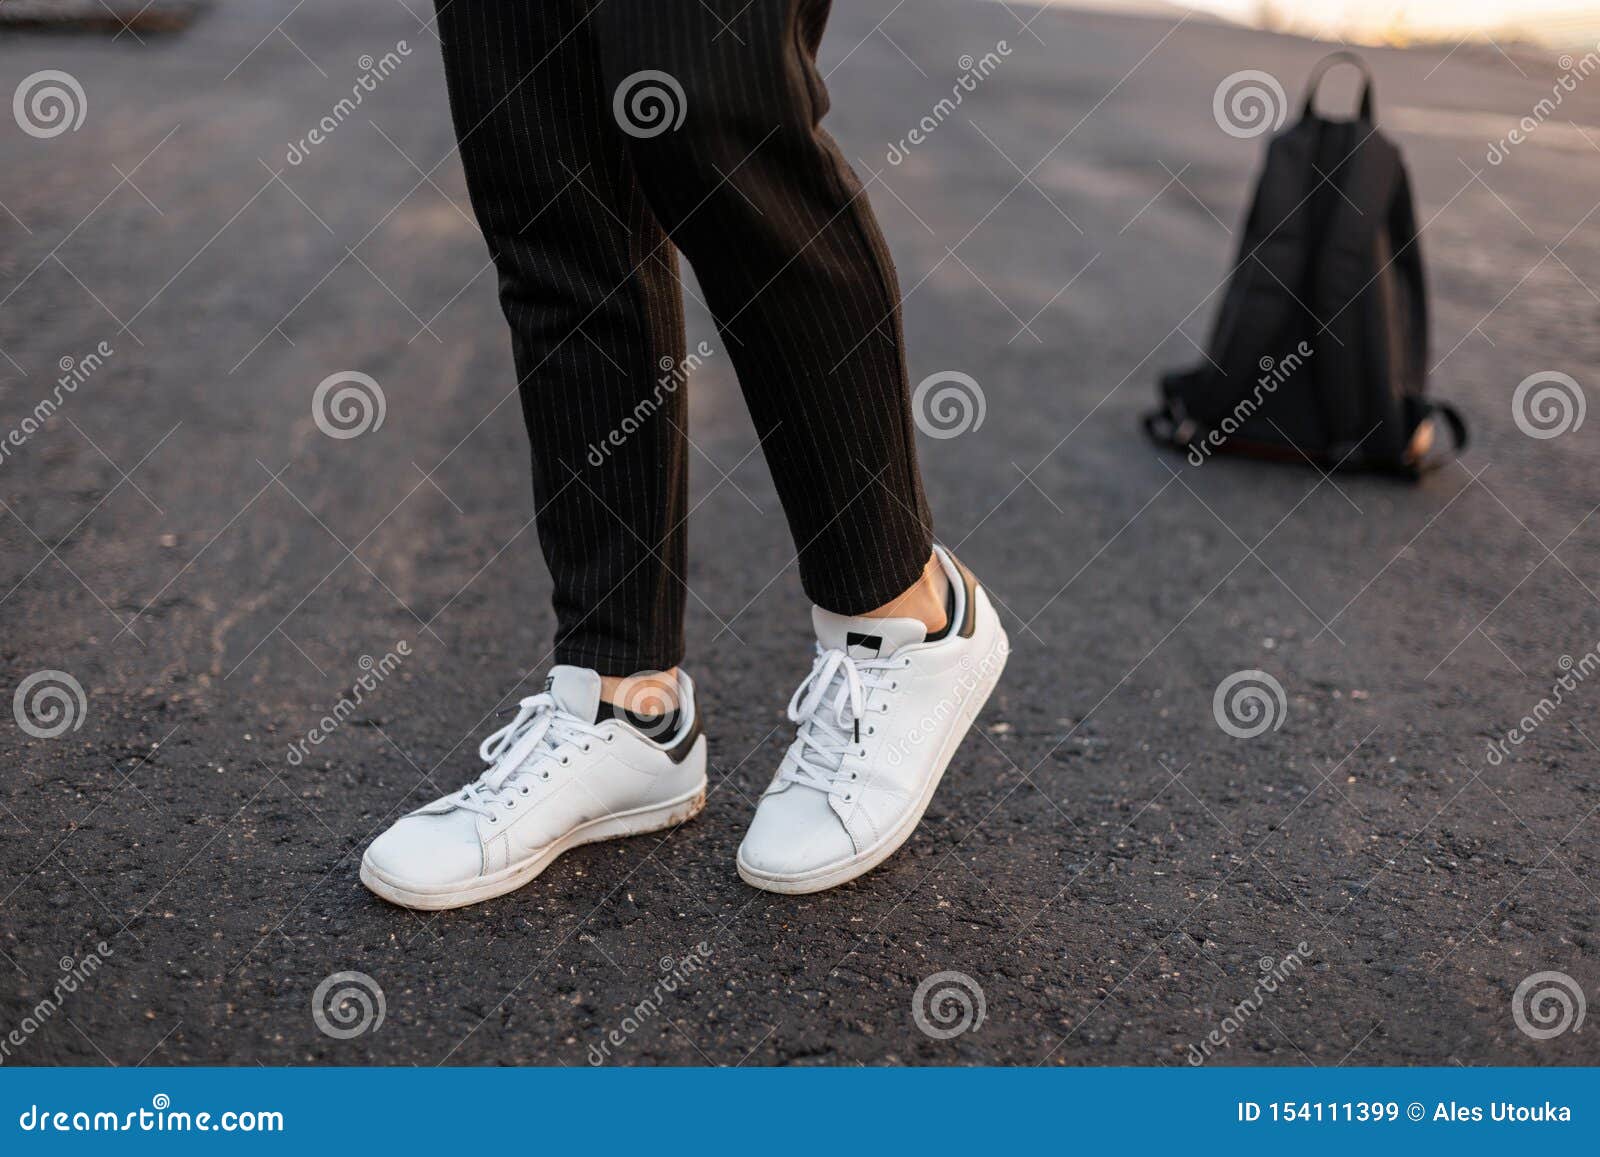 Moda casual para mujer calzado deportivo para mujer piernas delgadas  femeninas en jeans y zapatillas de deporte casuales con estilo blancas  zapatos cómodos de verano para mujer